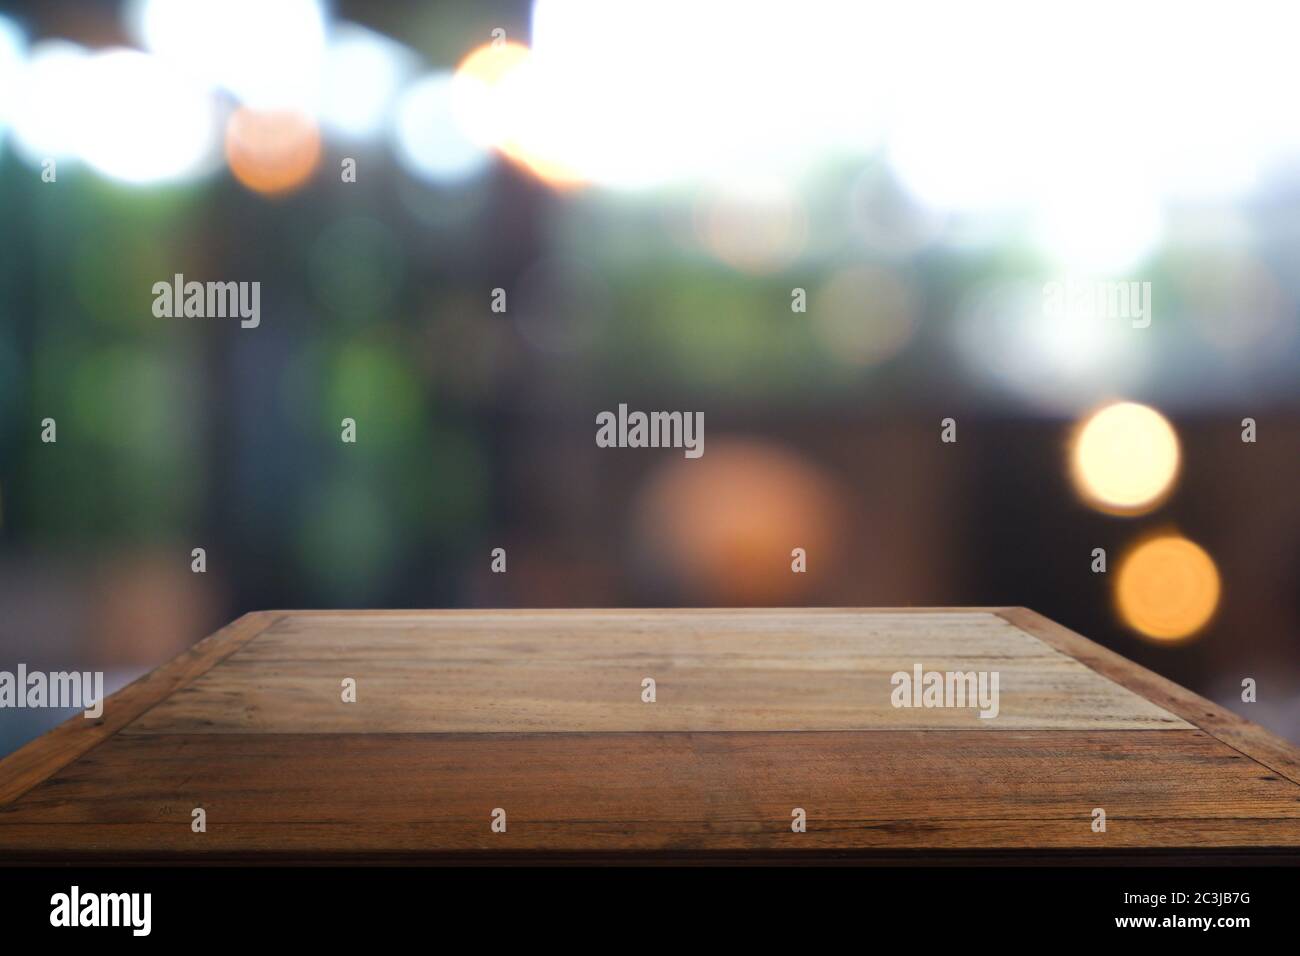 Leerer Holztisch vor abstrakt verschwommenem Cafe, Restaurant. Für Montage Produktanzeige oder Design Schlüssel visuelle Layout - Bild Stockfoto